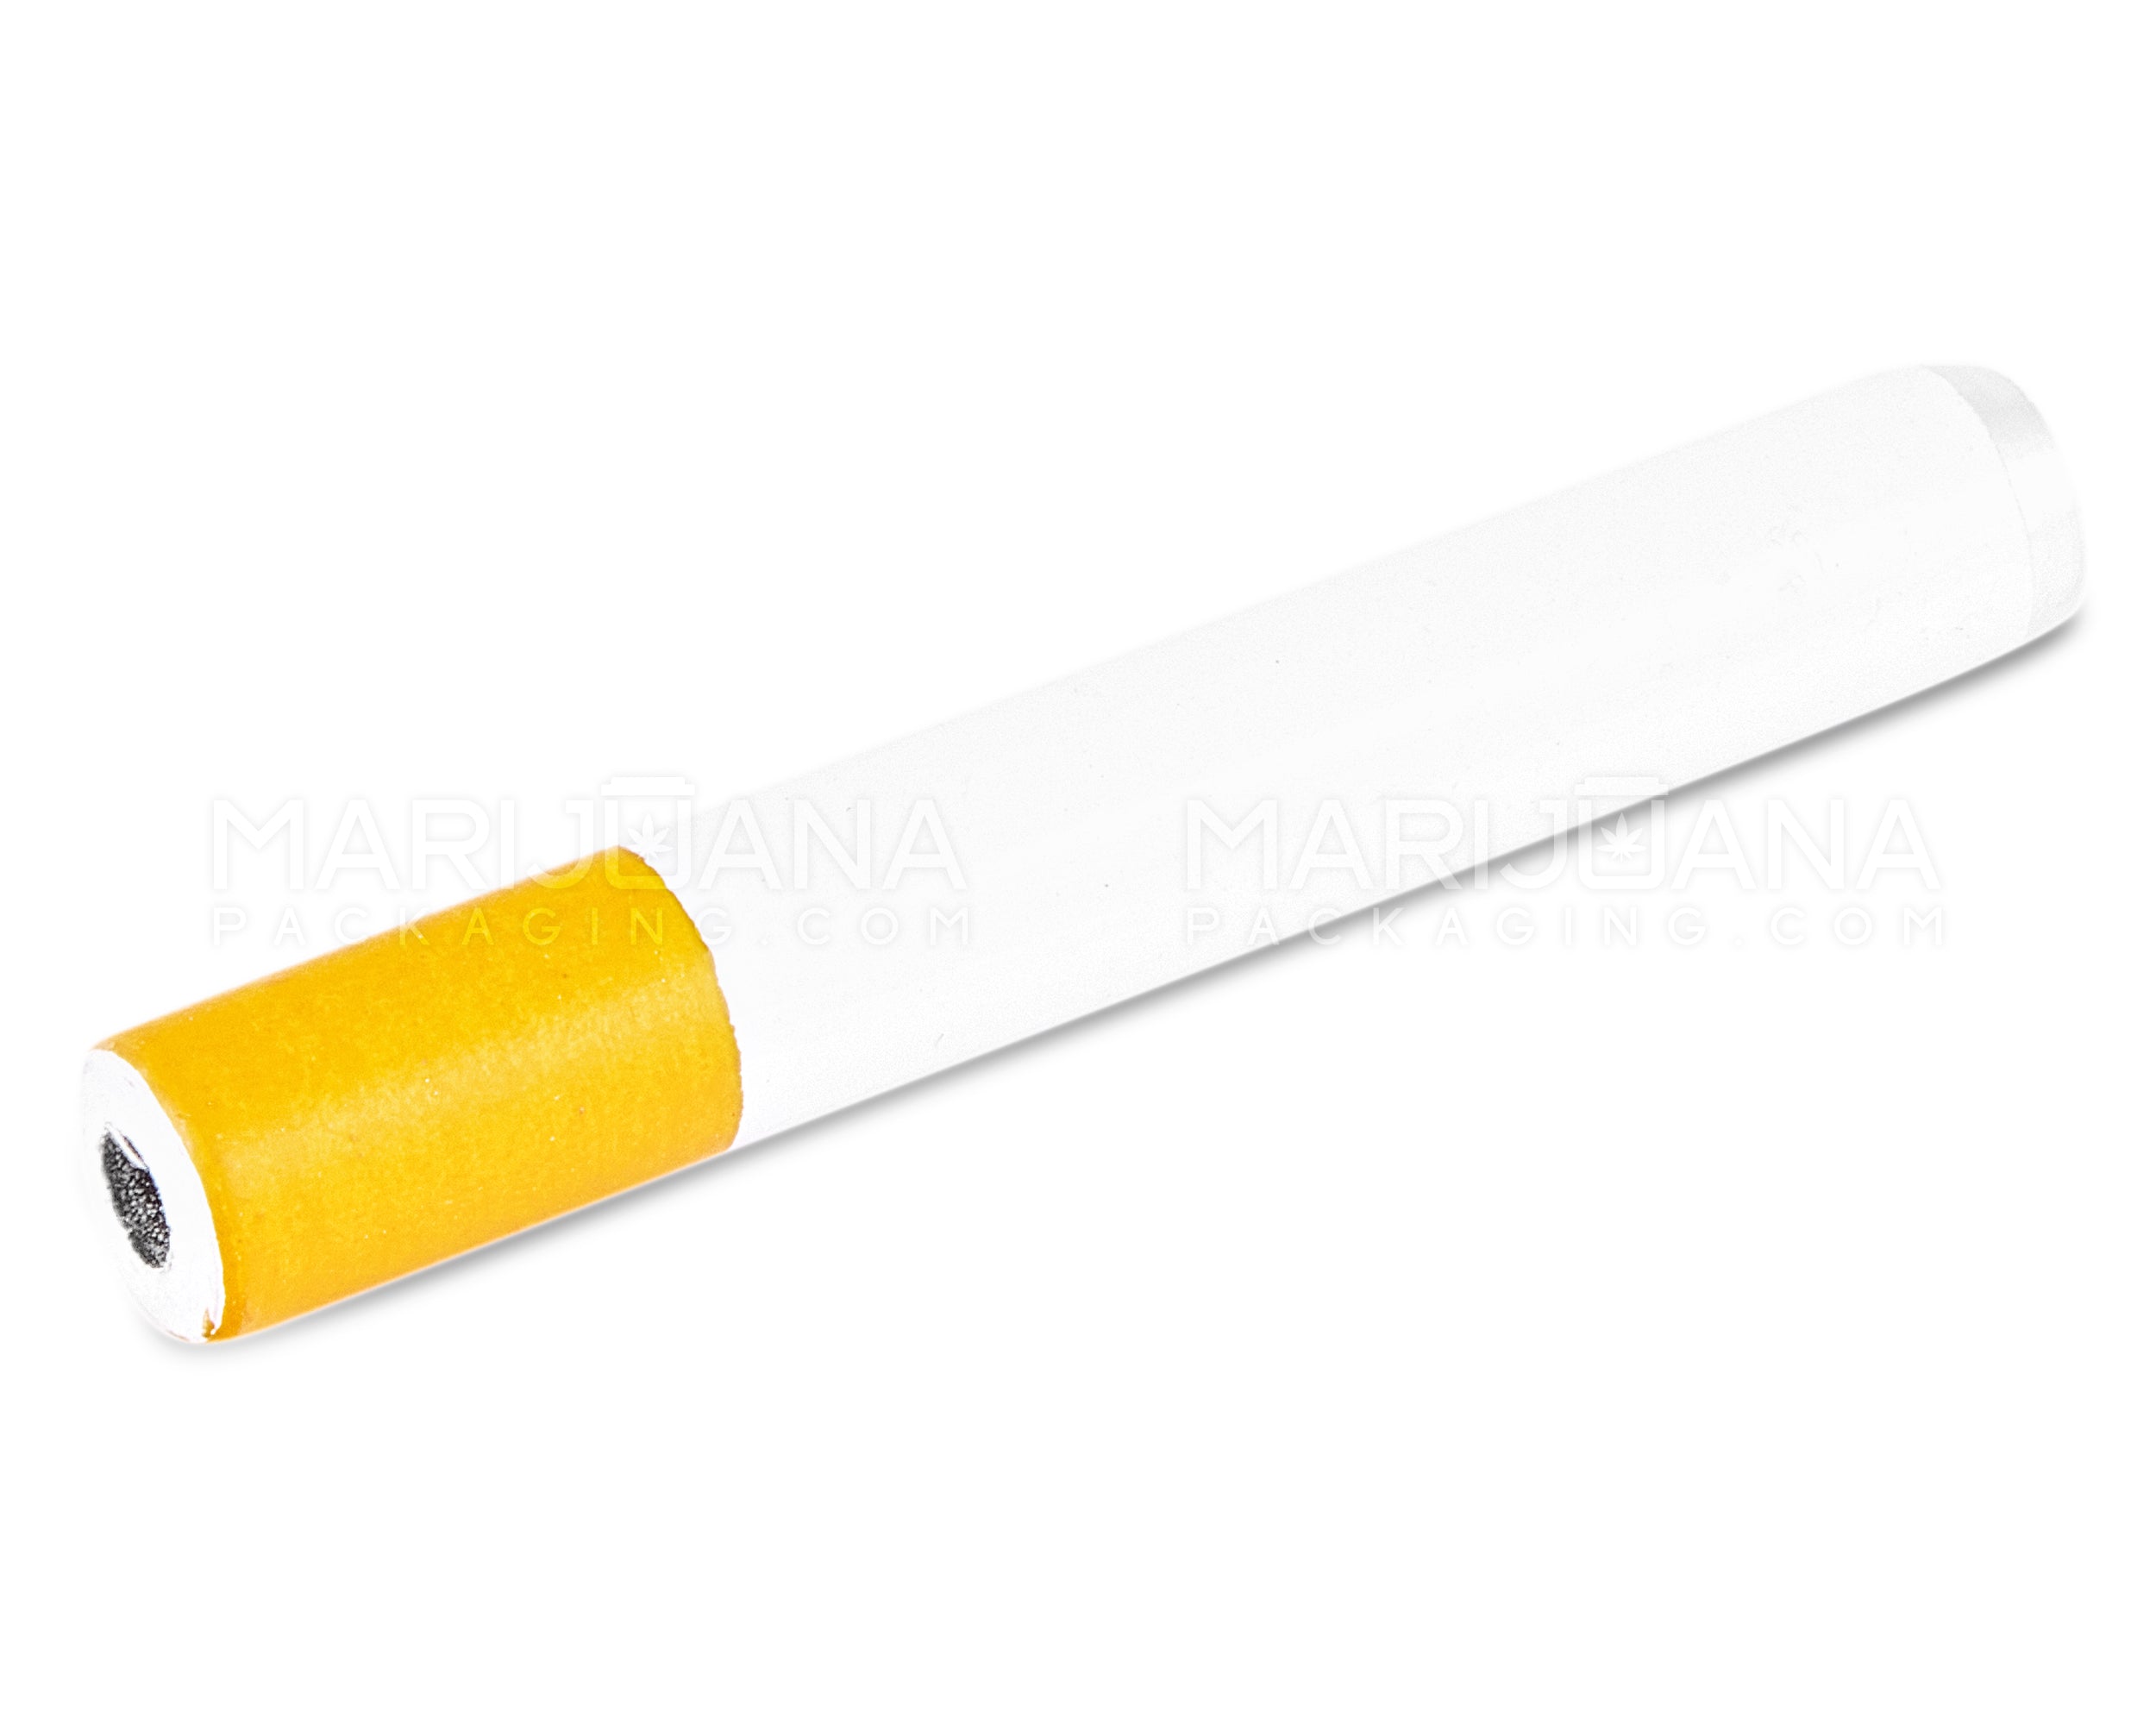 Cigarette Chillum Hand Pipe | 2.5in Long - Metal - Orange & White - 2